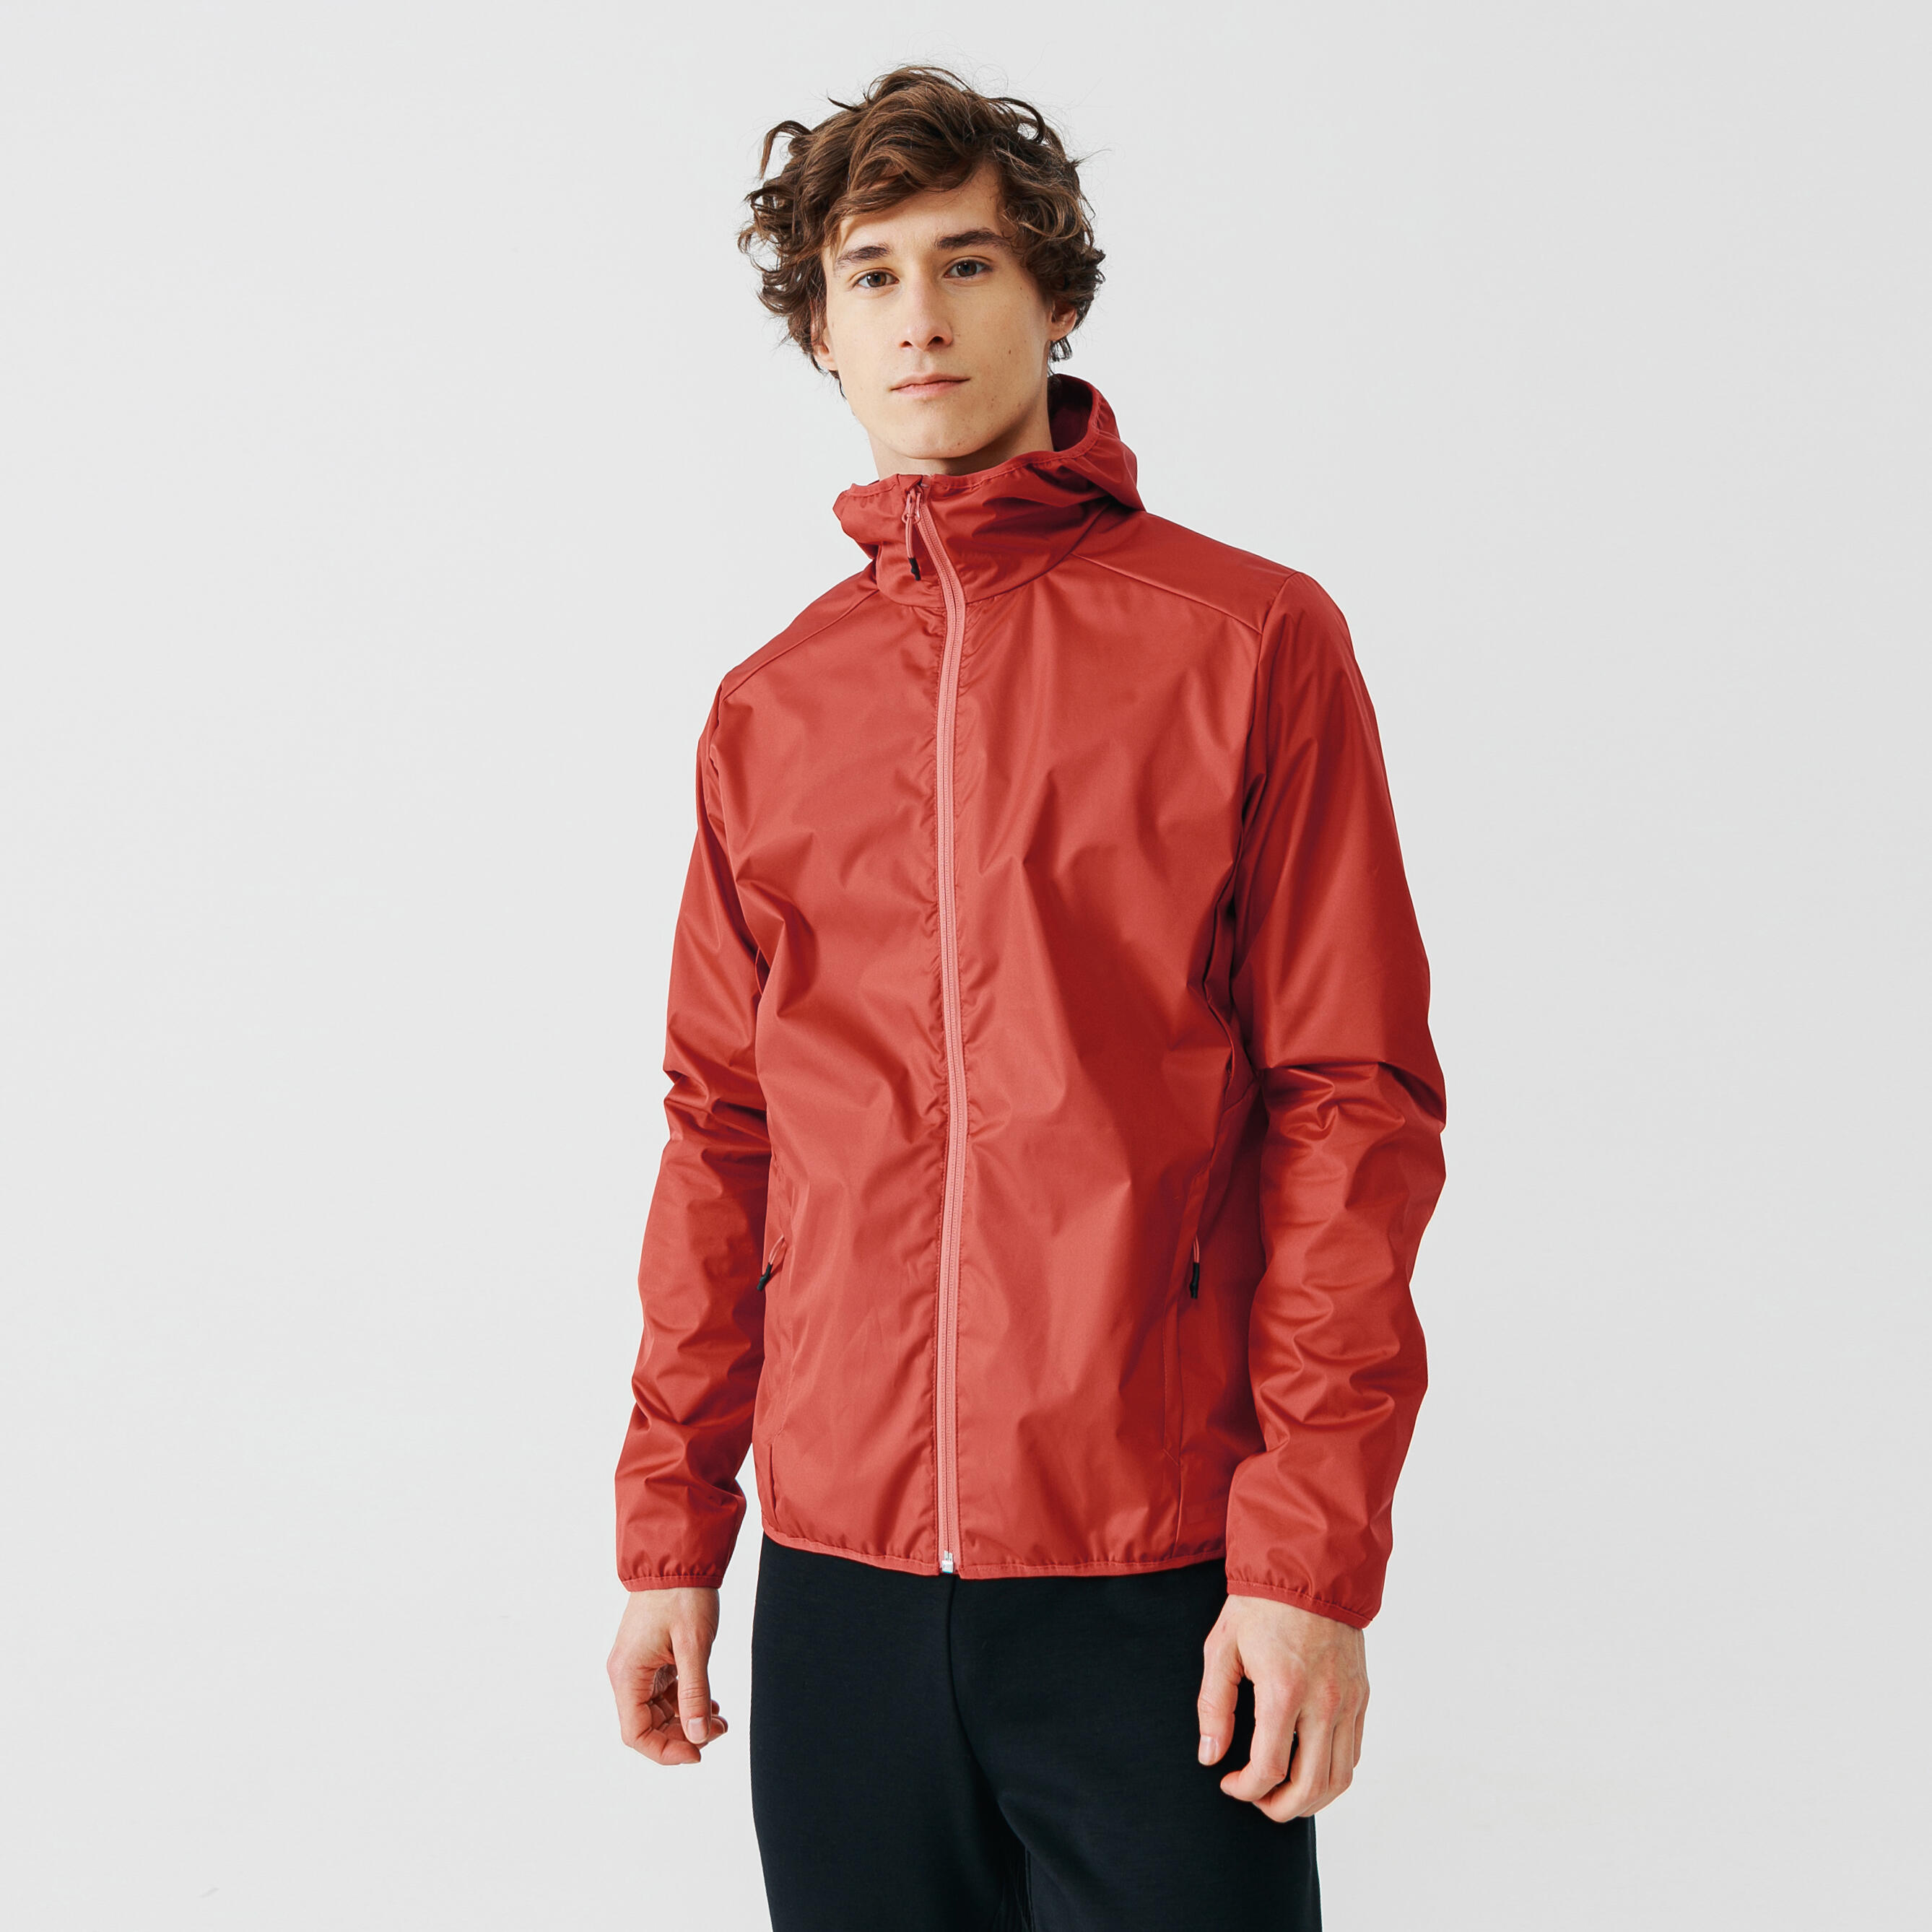 Jachetă protecție ploaie și vânt Alergare Jogging RUN RAIN Roșu Bărbați Alergare